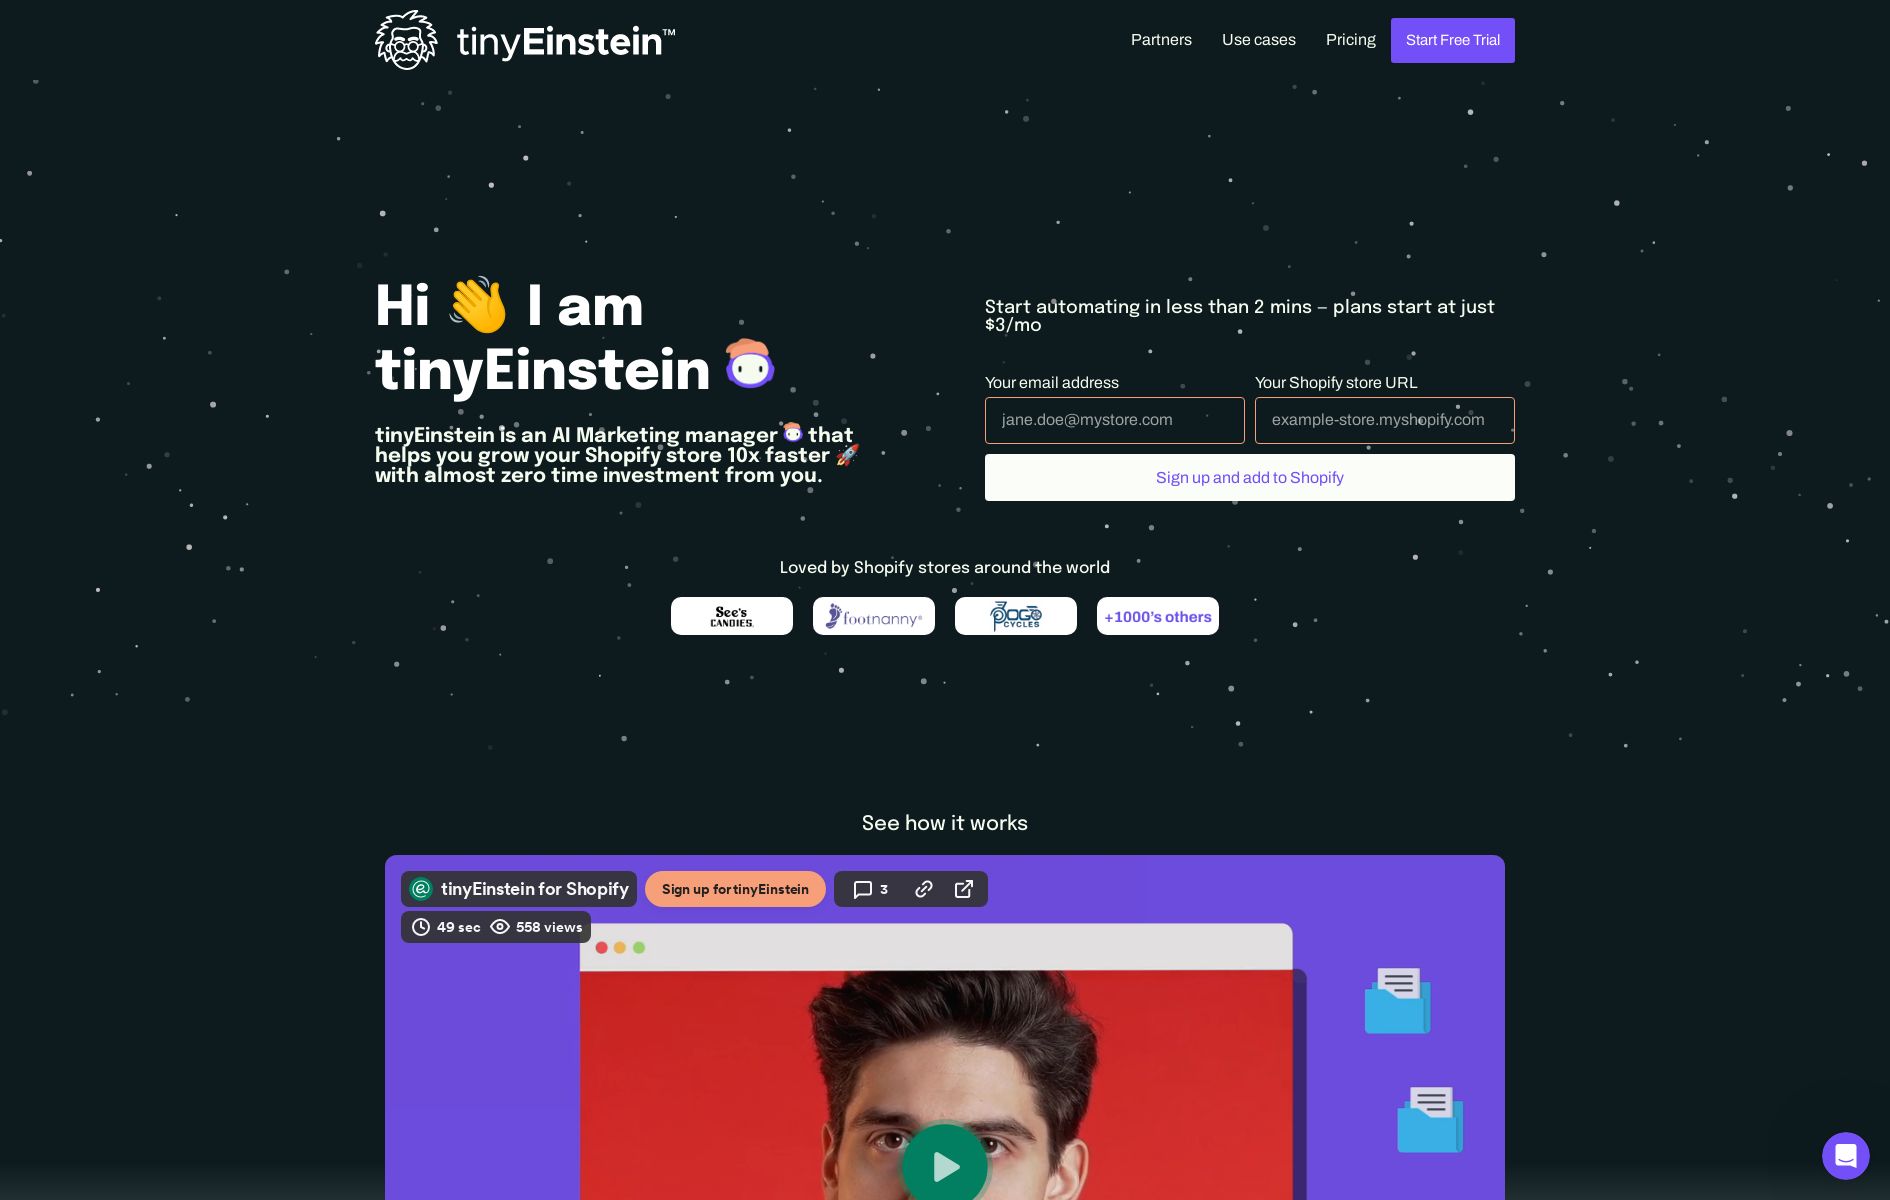 tinyEinstein